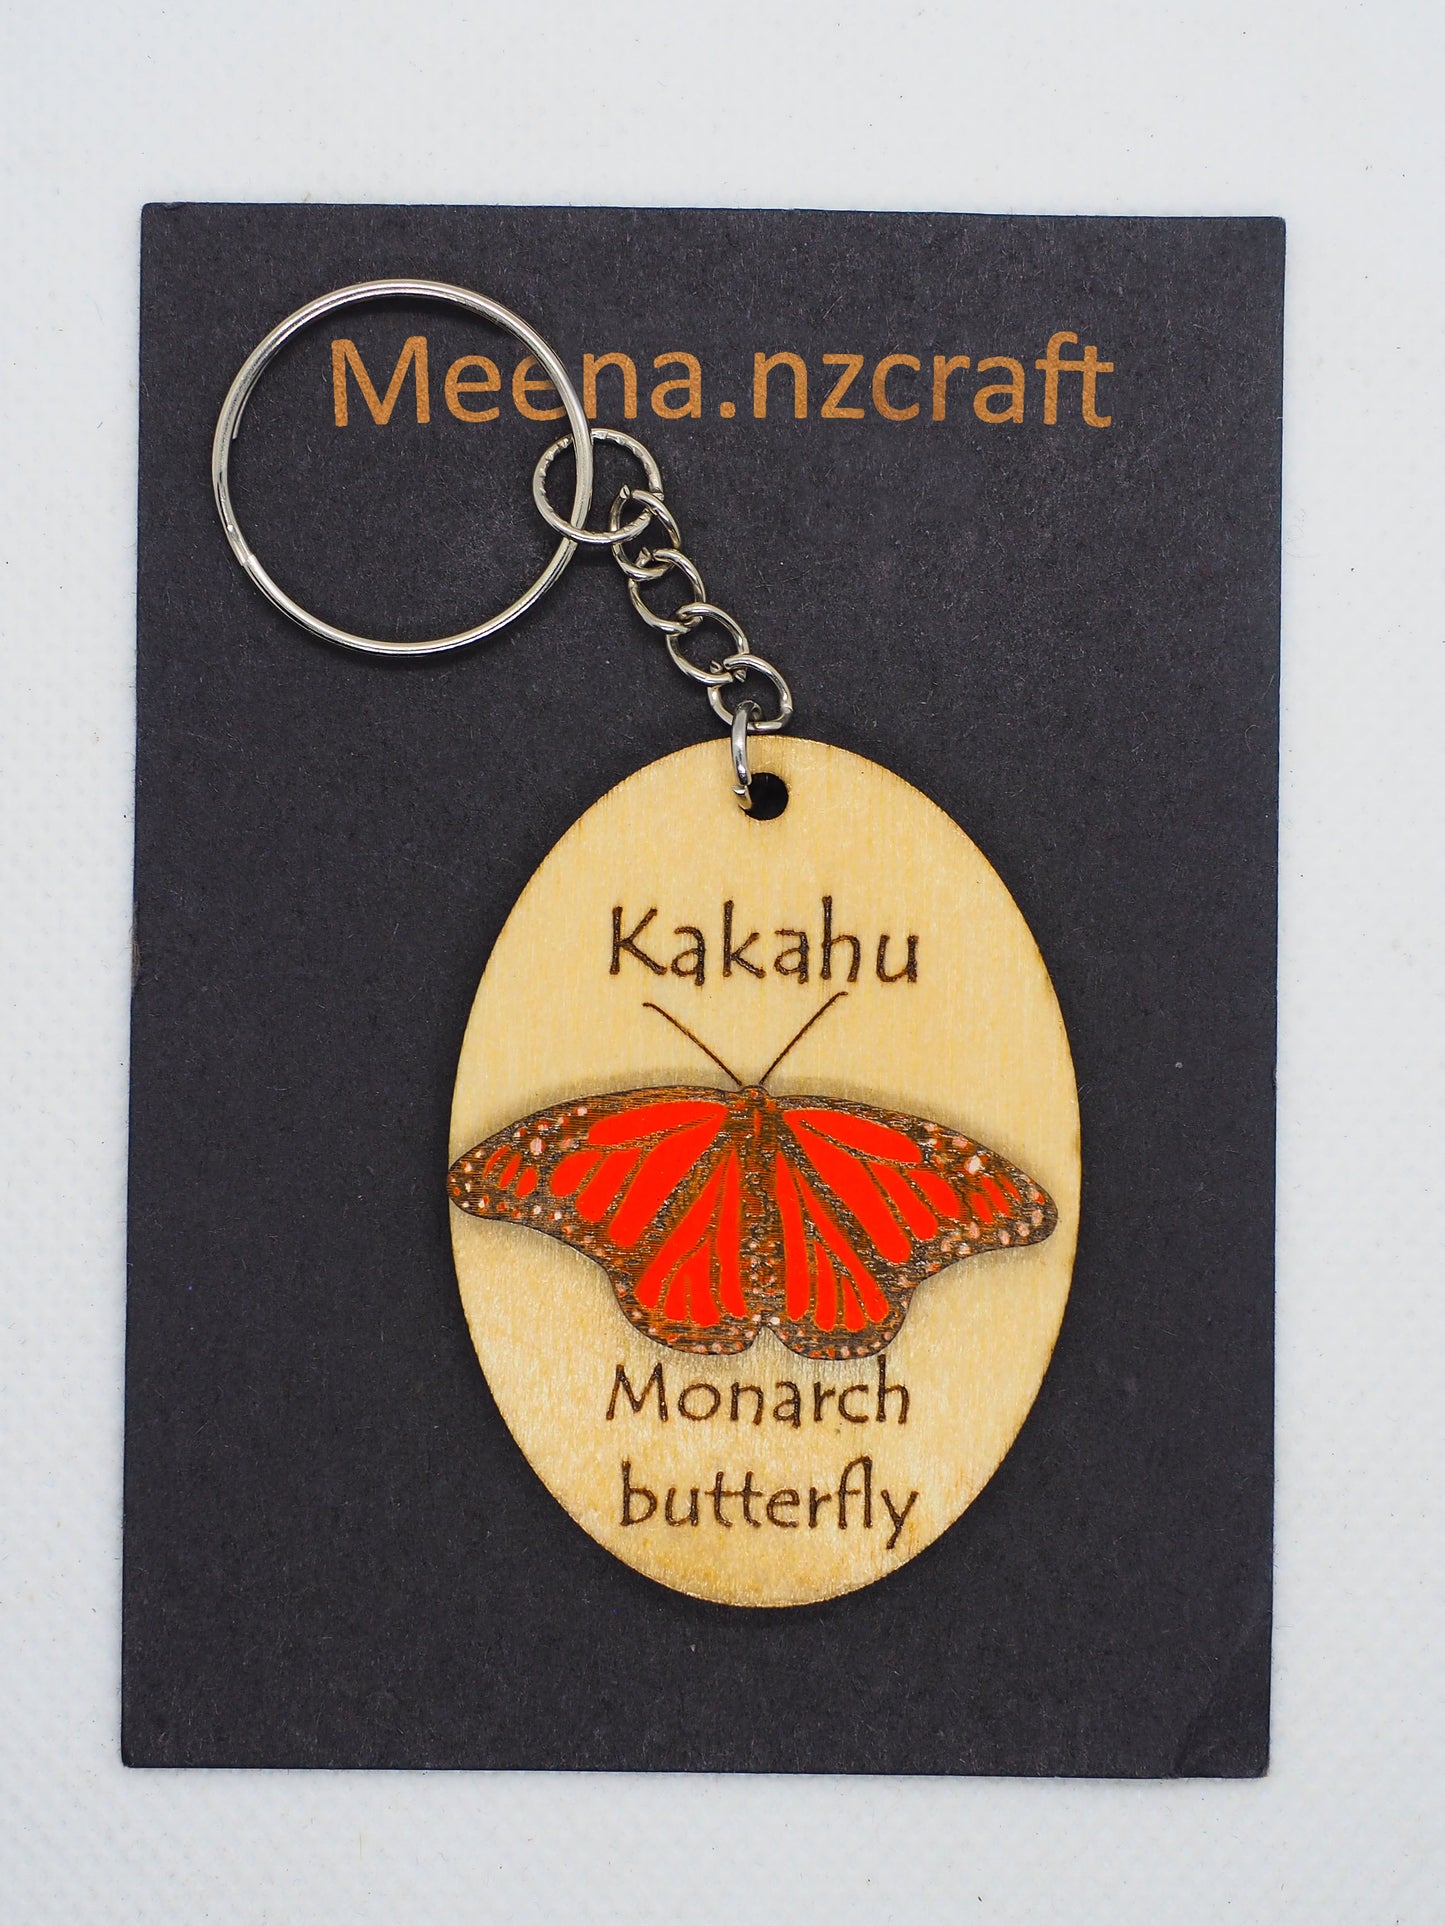 Monarch Butterfly (Kakahu) Wooden Rimu Keychain